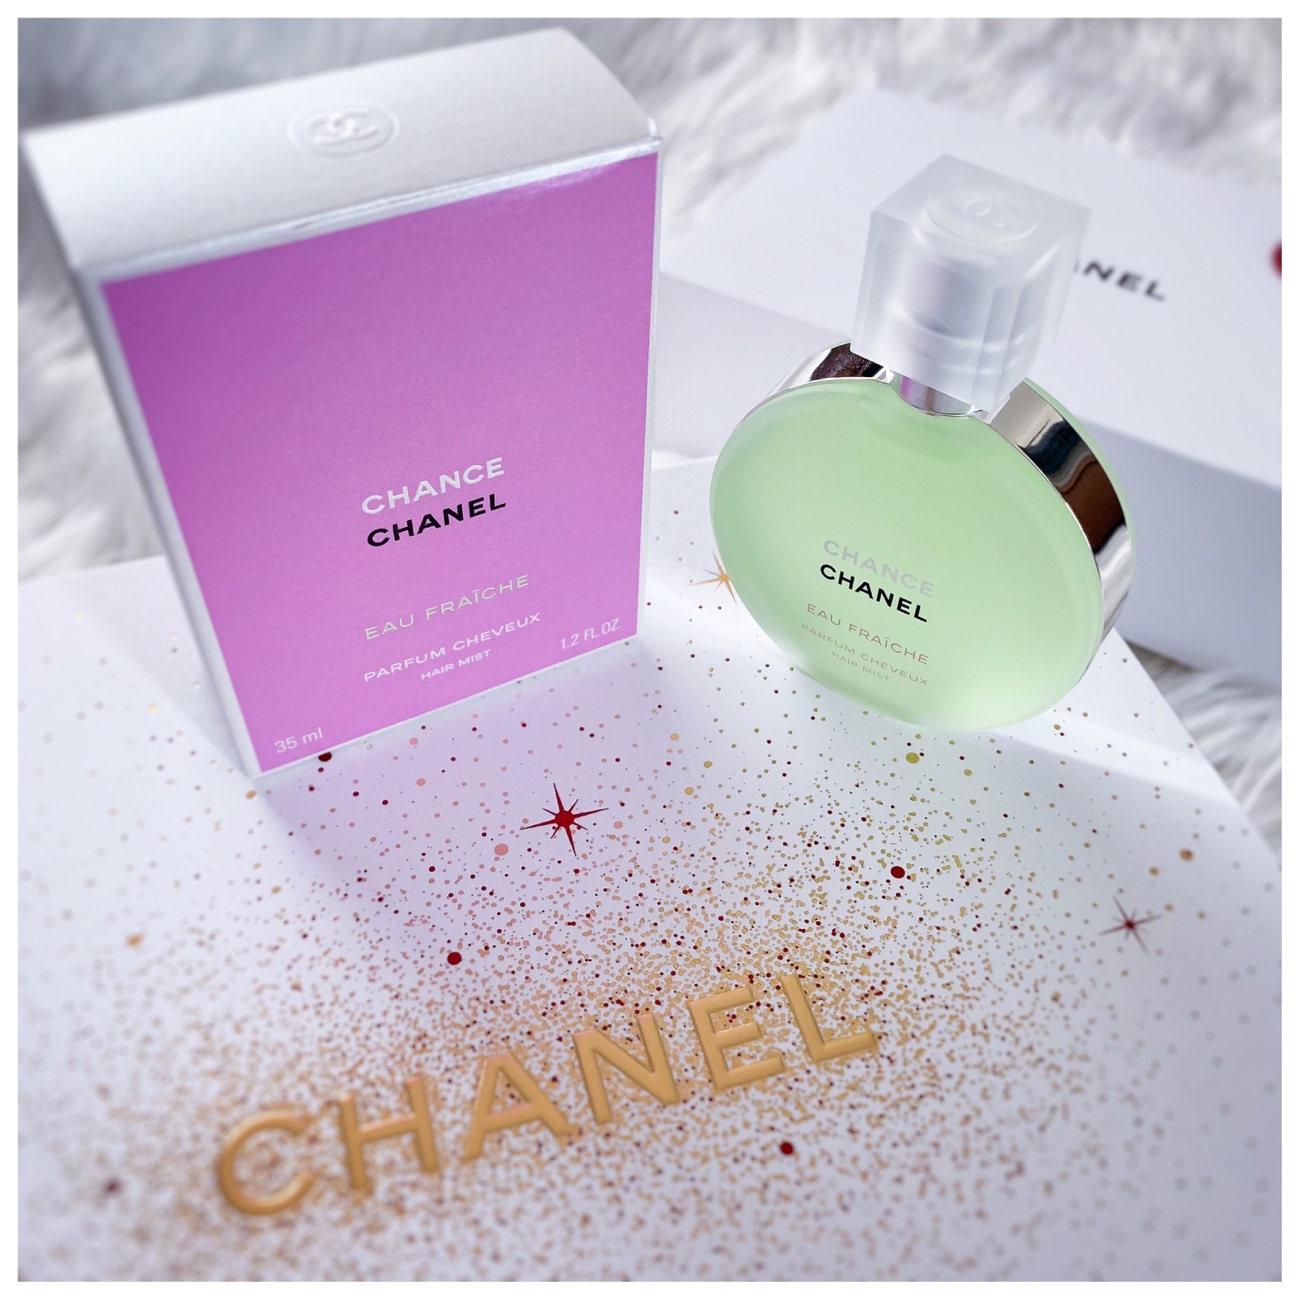 Chanel Gabrielle and Chance Eau Fraiche Hair Mist